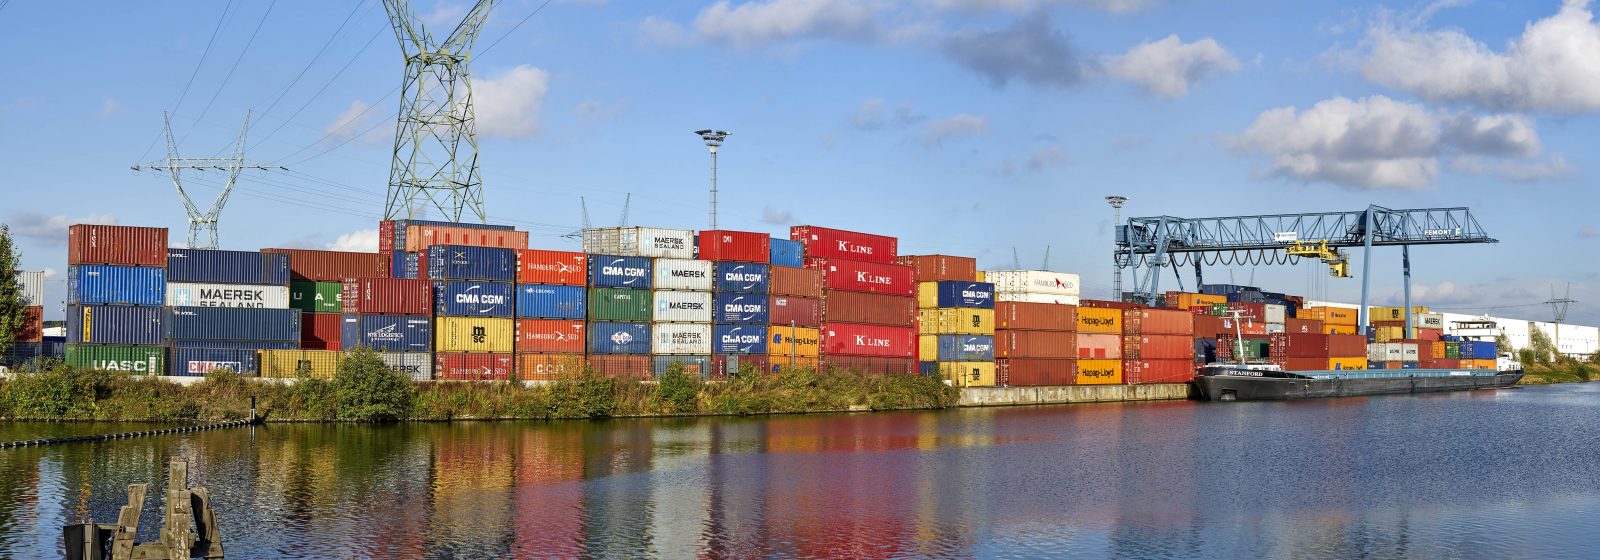 Van Moer Container Terminal Cargovil in Grimbergen